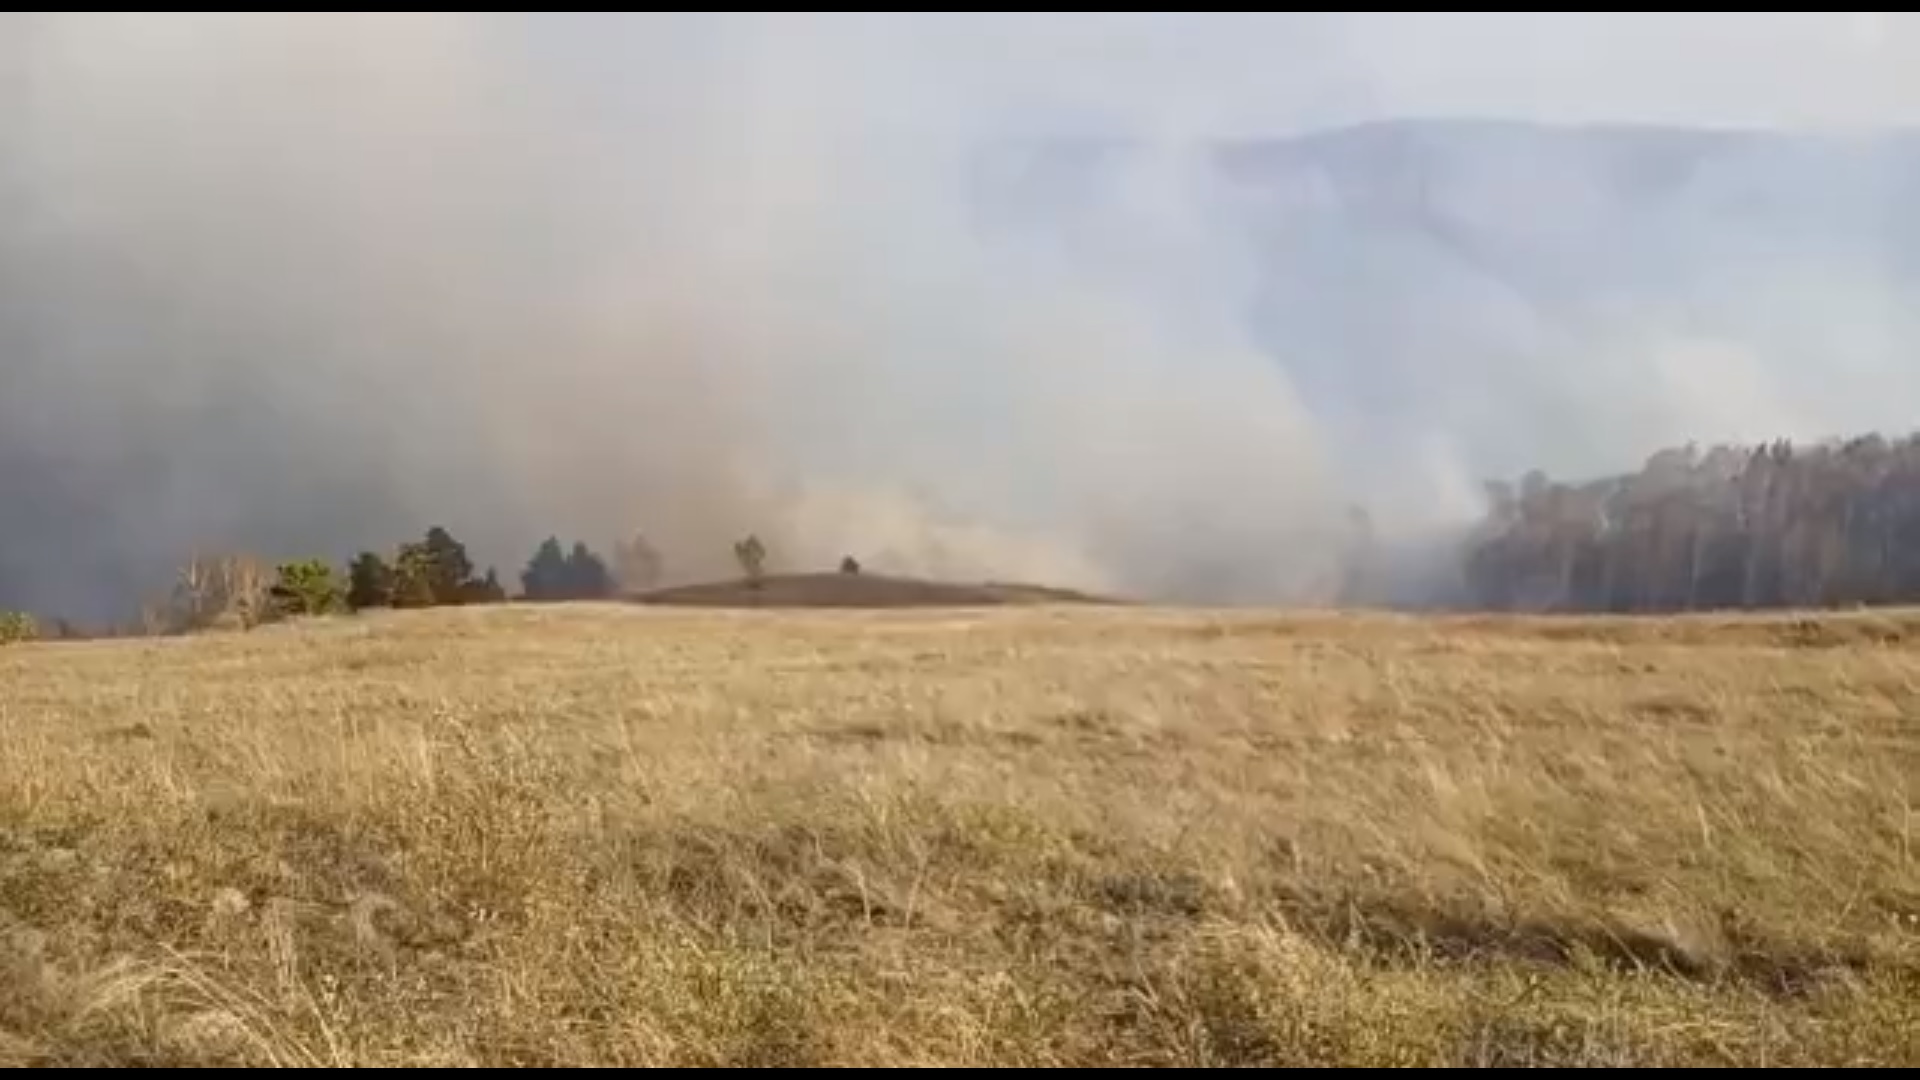 Пожары в Саяногорске